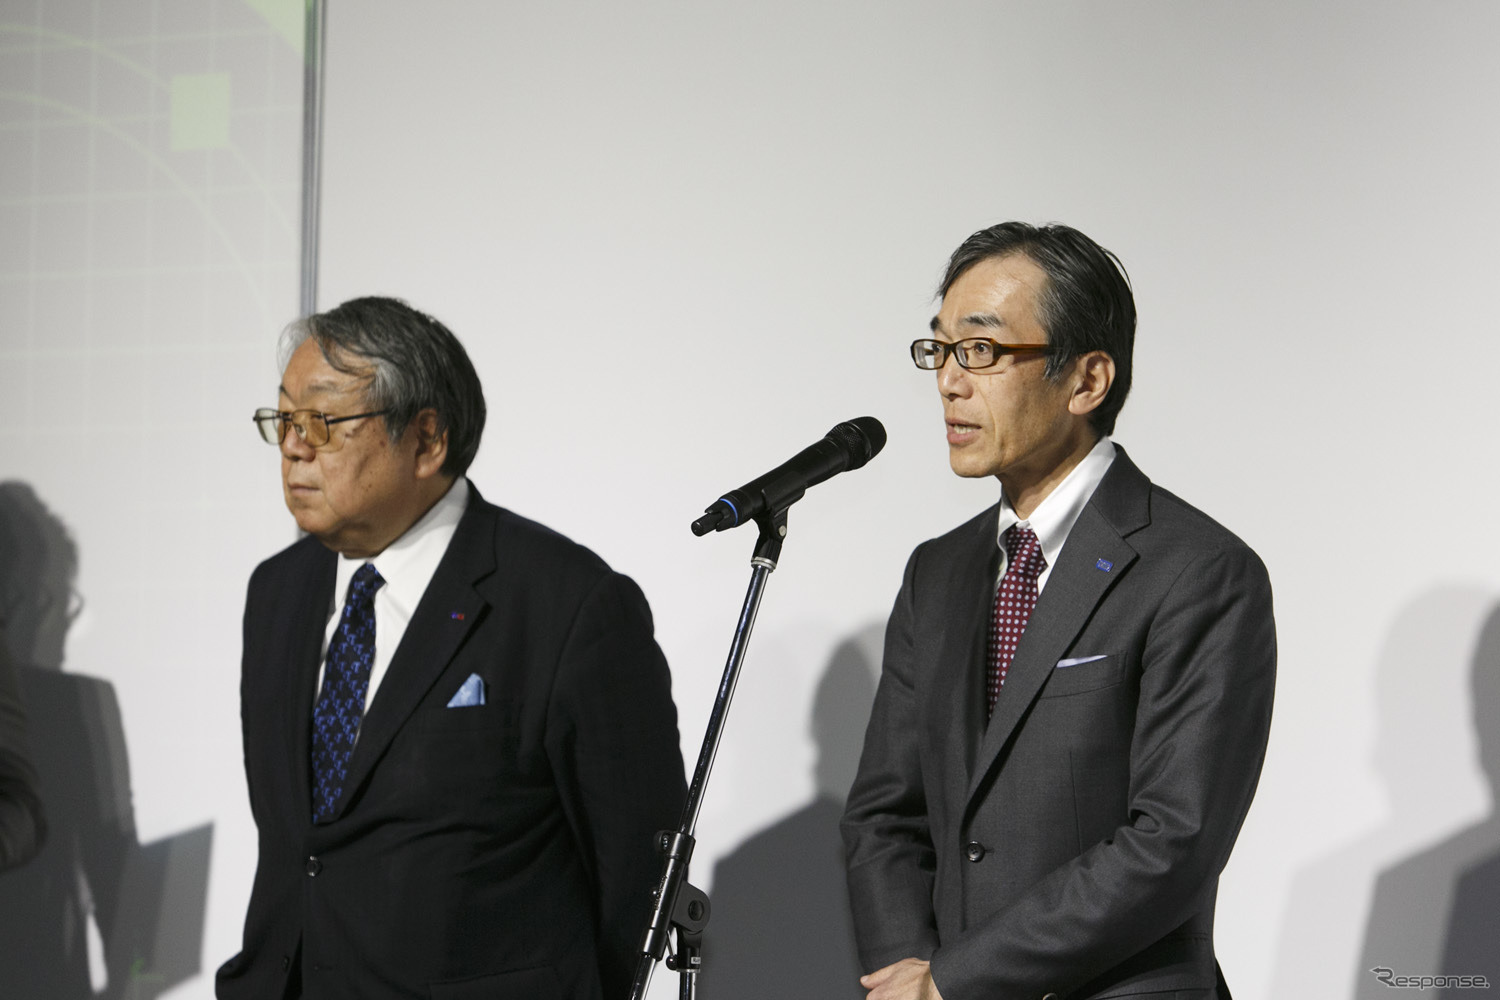 タカラトミー 代表取締役社長の小島一洋さん（右）、テレビ大阪 代表取締役社長の田中信行さん（左）